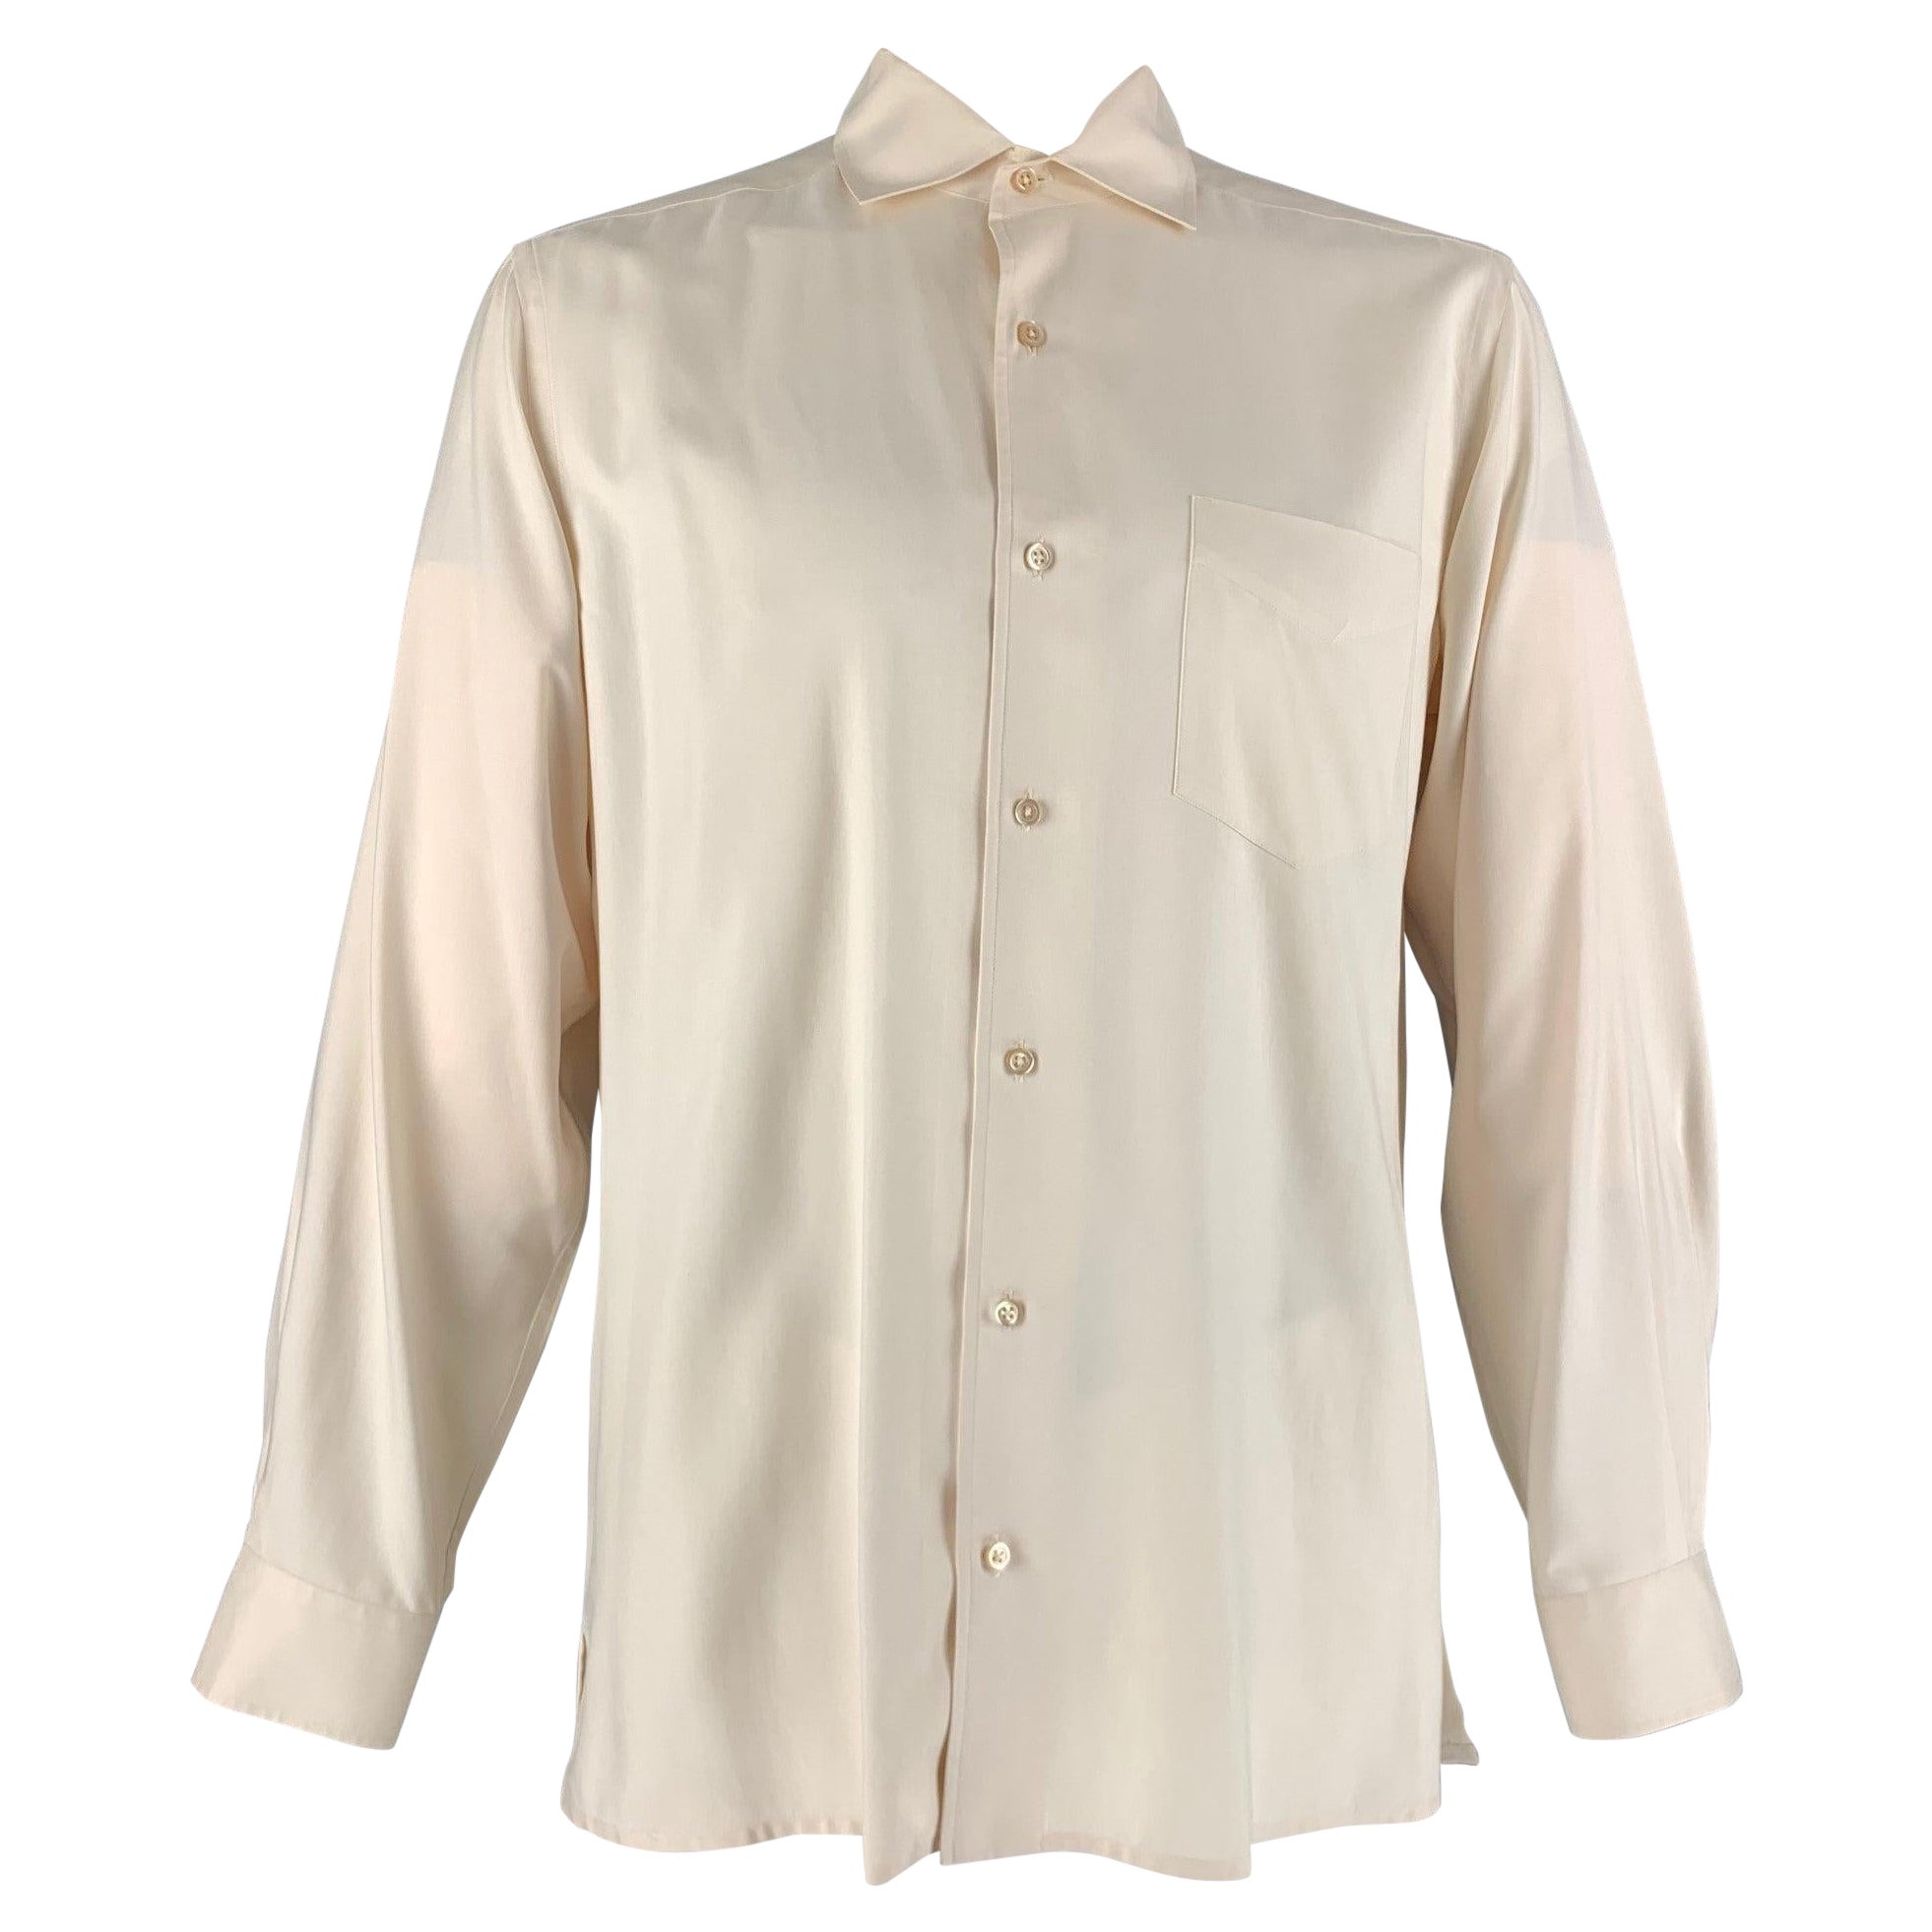 RALPH LAUREN Size L Cream Silk One pocket Long Sleeve Shirt